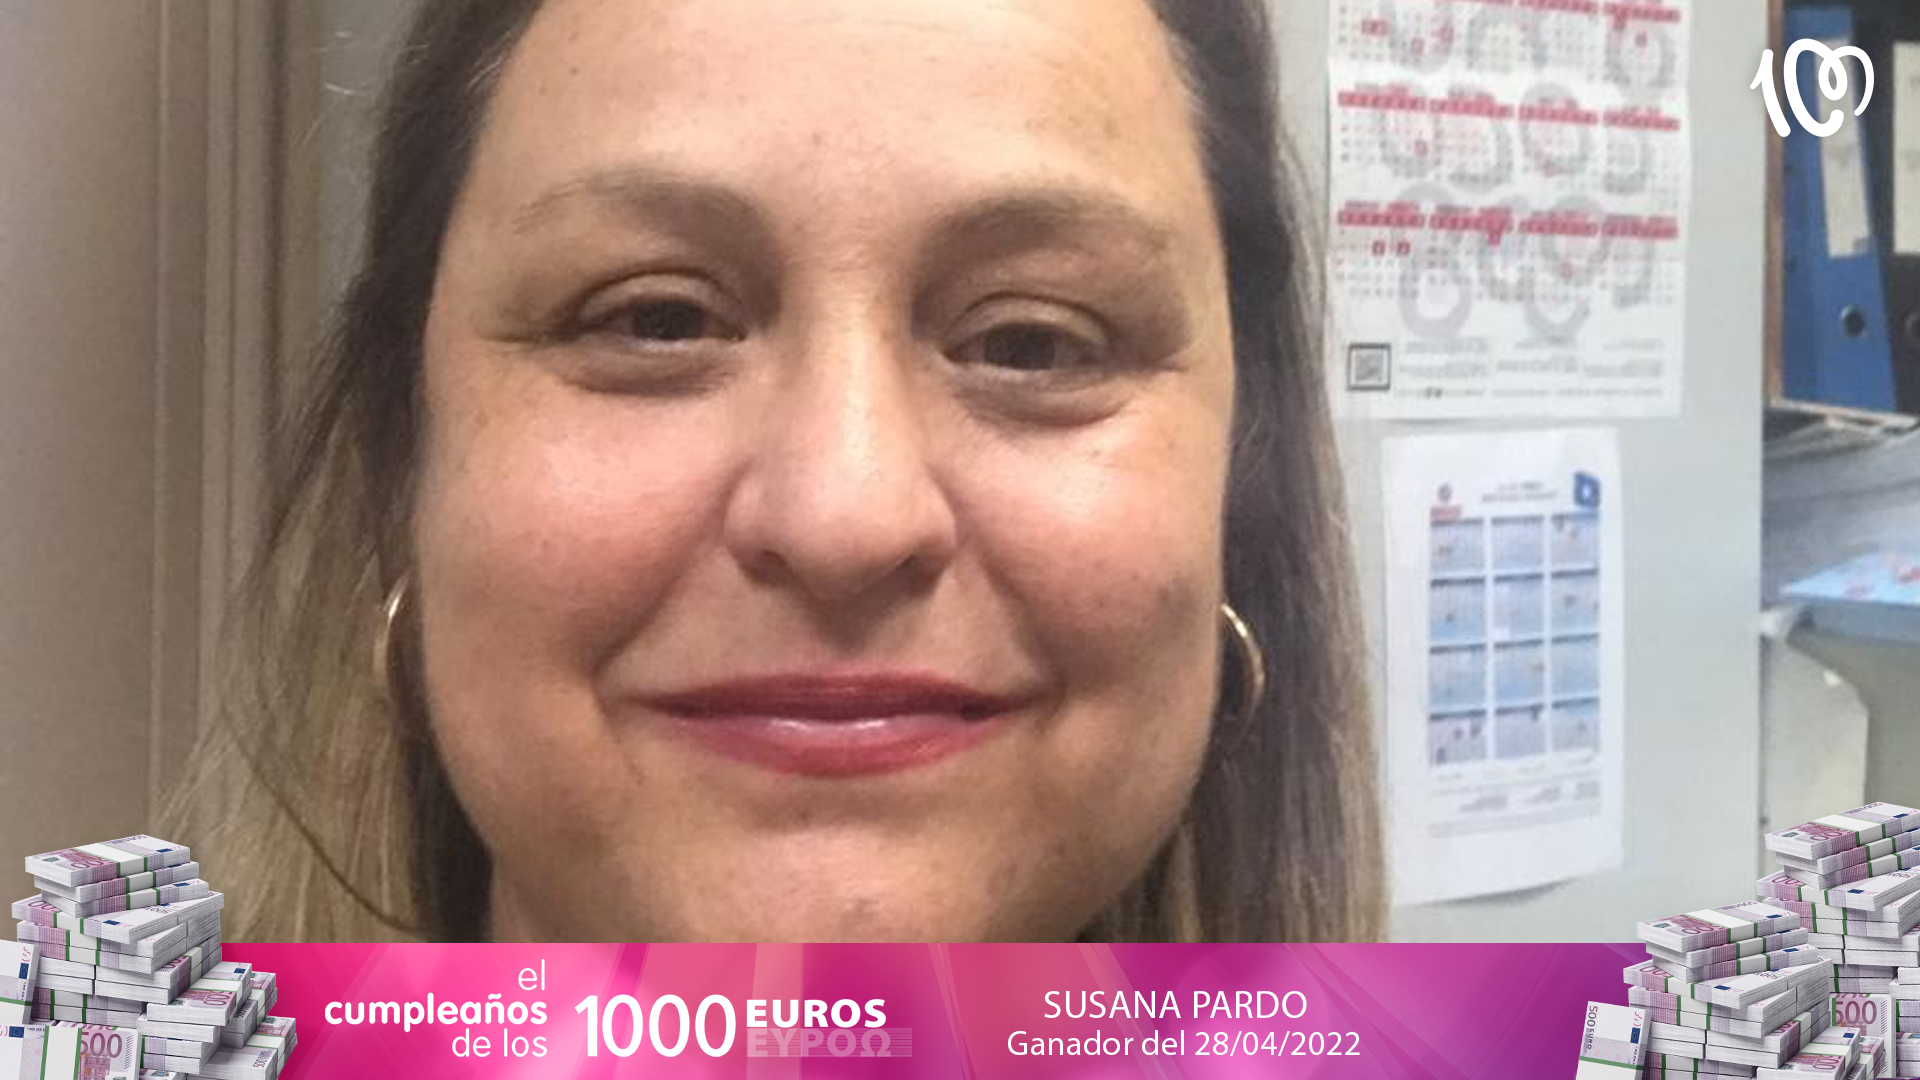 Susana ha ganado 2.000 euros: "La peor jugada para ganar la PAGA DOBLE!"